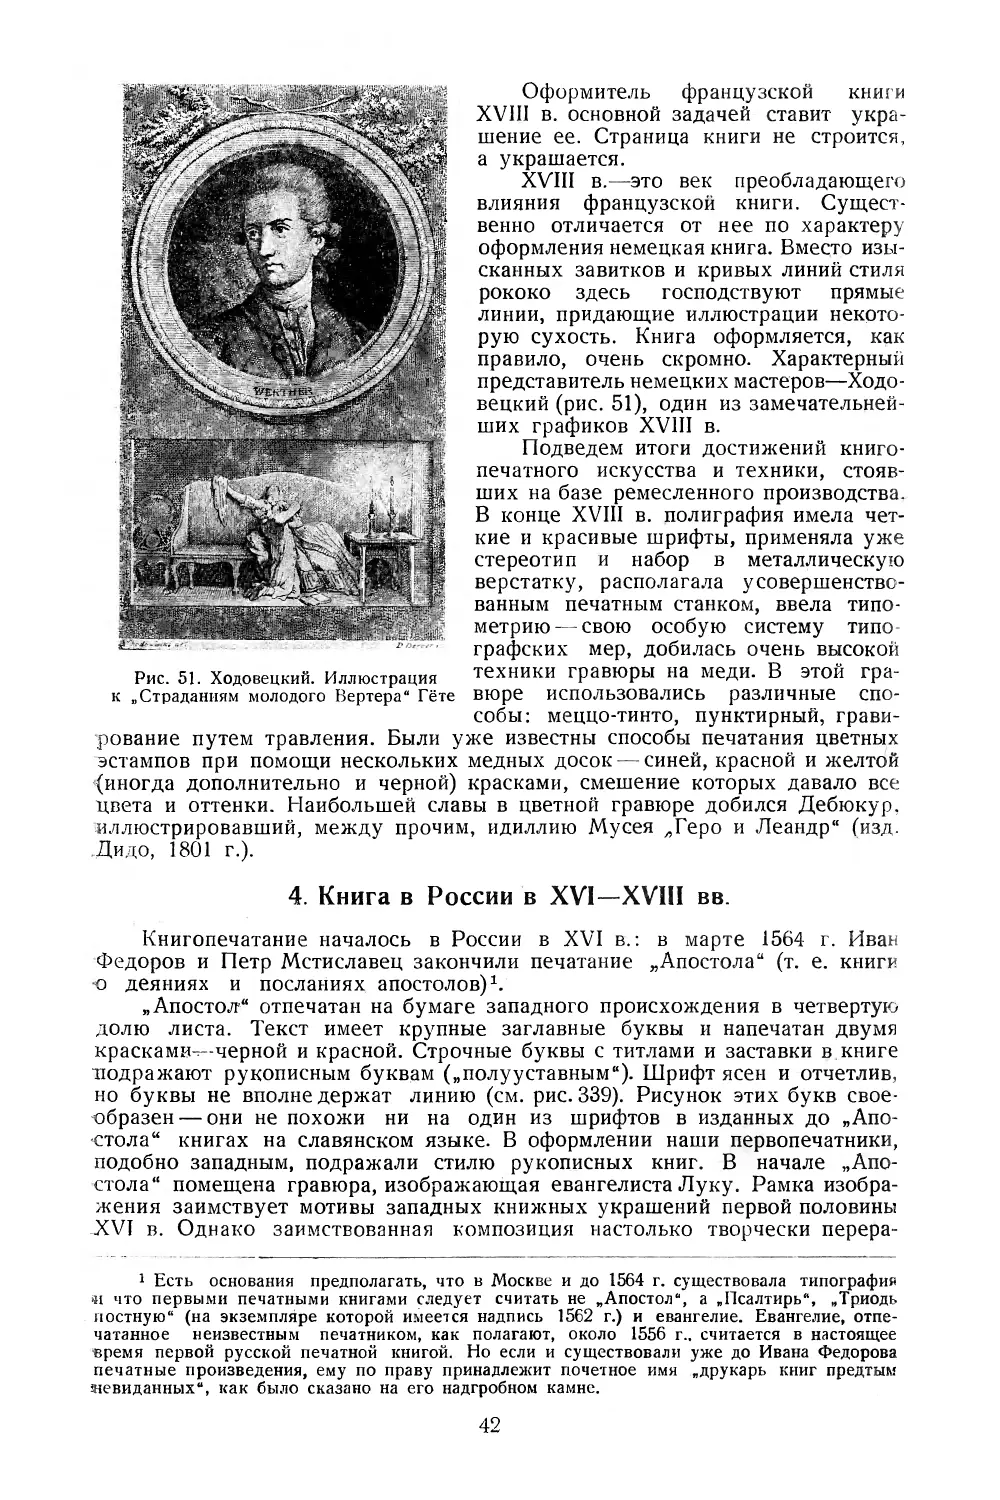 4. Книга в России в XVI—XVIII вв